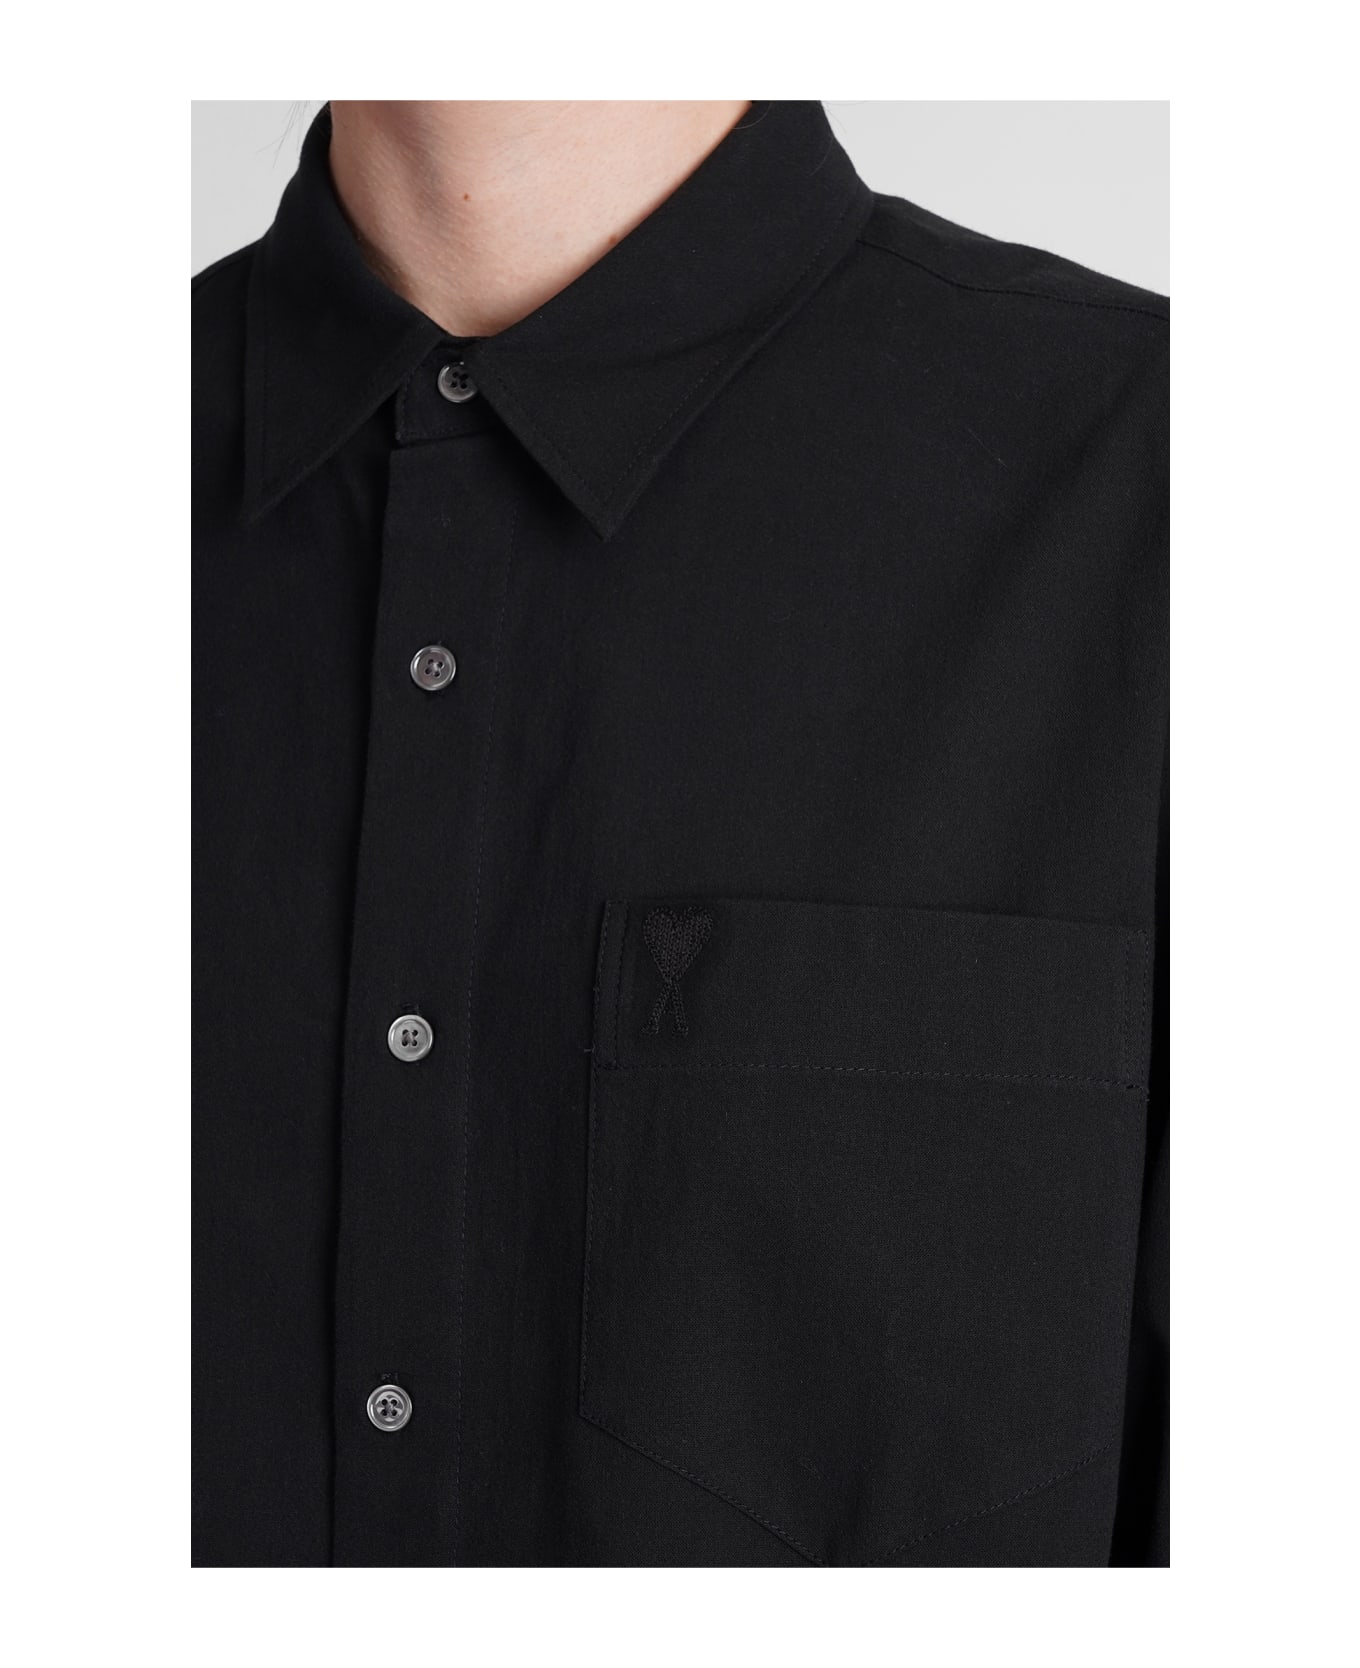 Ami Alexandre Mattiussi Shirt In Black Cotton - black